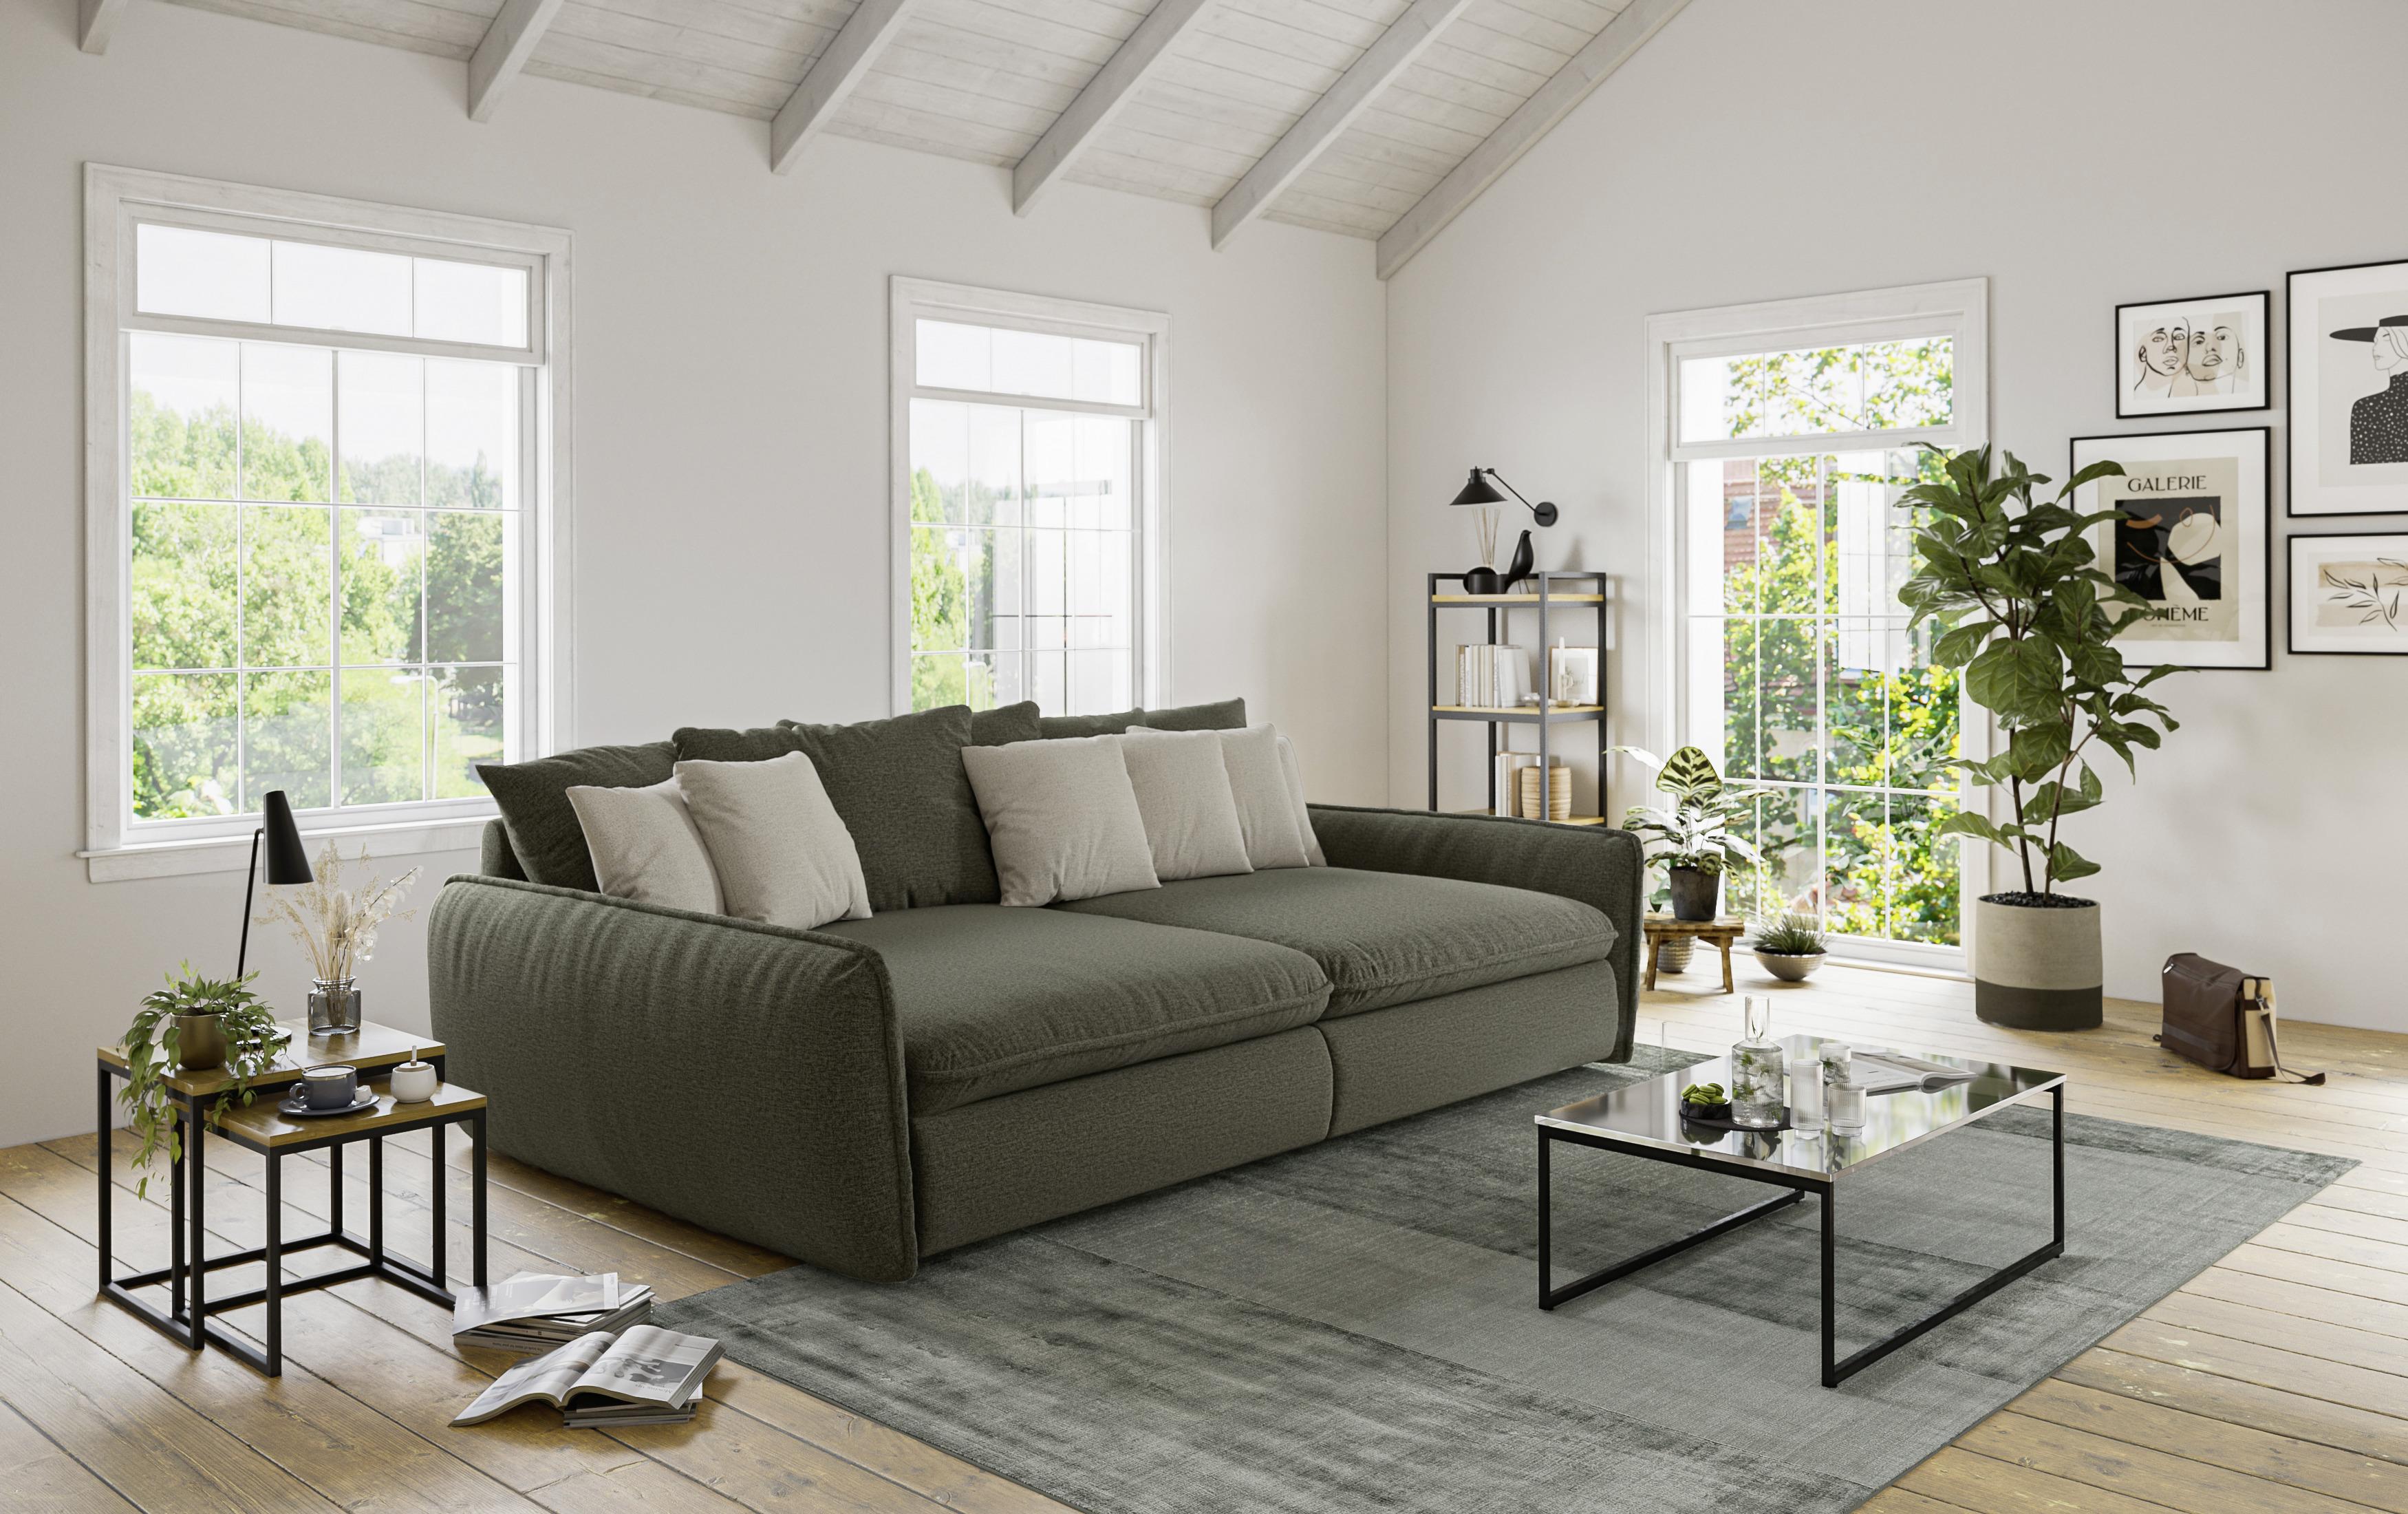 Pohovka Big Sofa Phil - tmavě zelená, Moderní, textil (234/77/131cm)